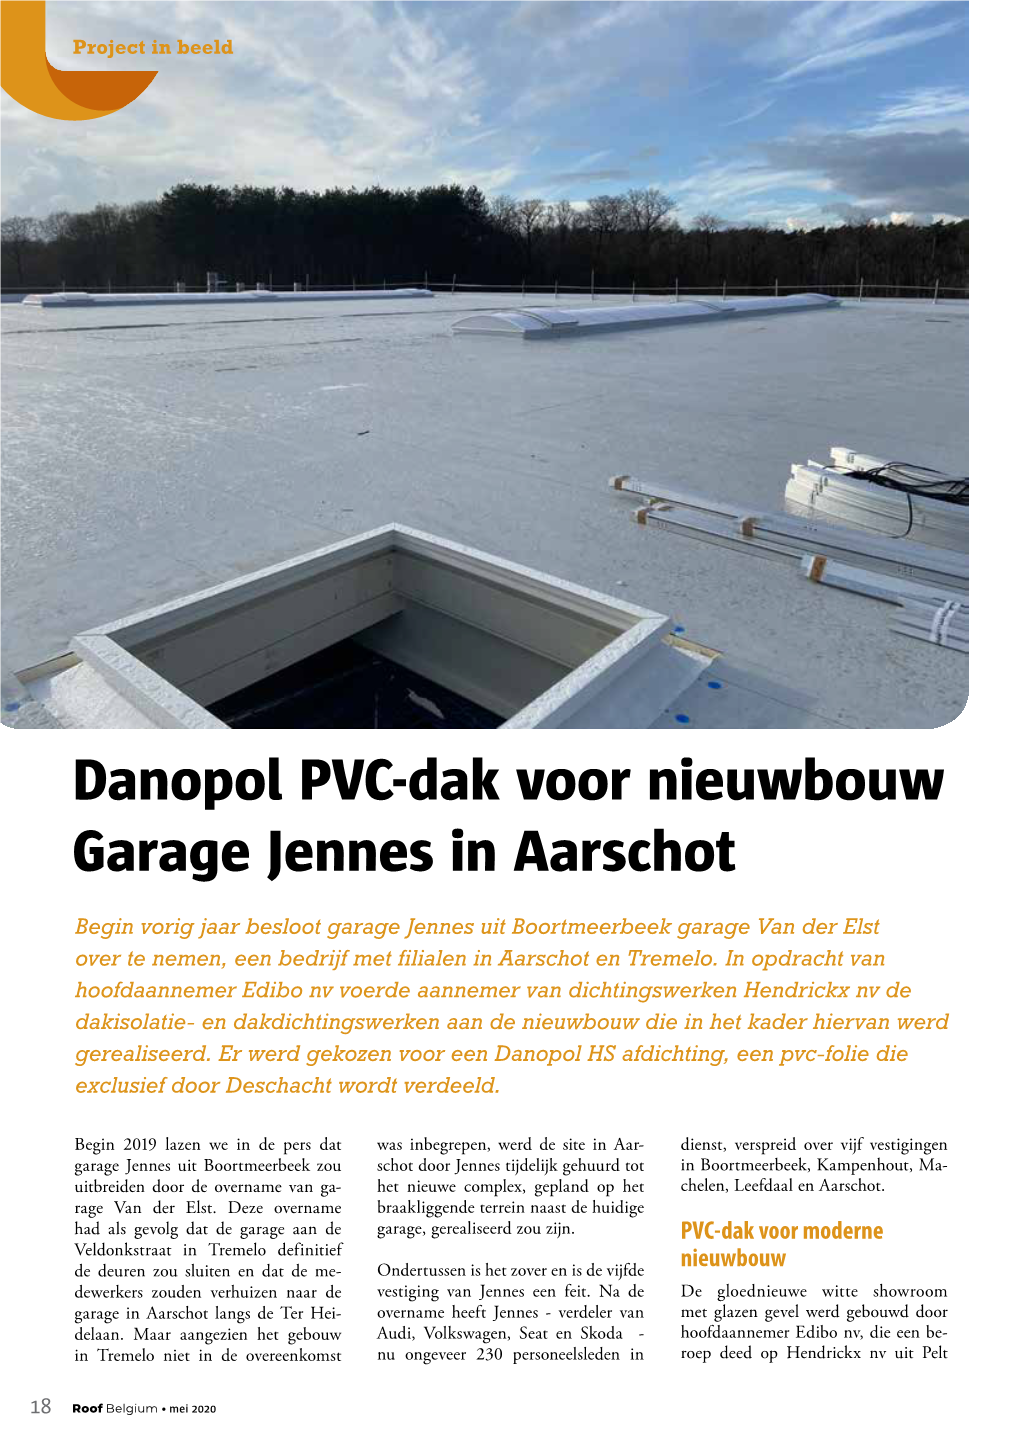 Danopol PVC-Dak Voor Nieuwbouw Garage Jennes in Aarschot